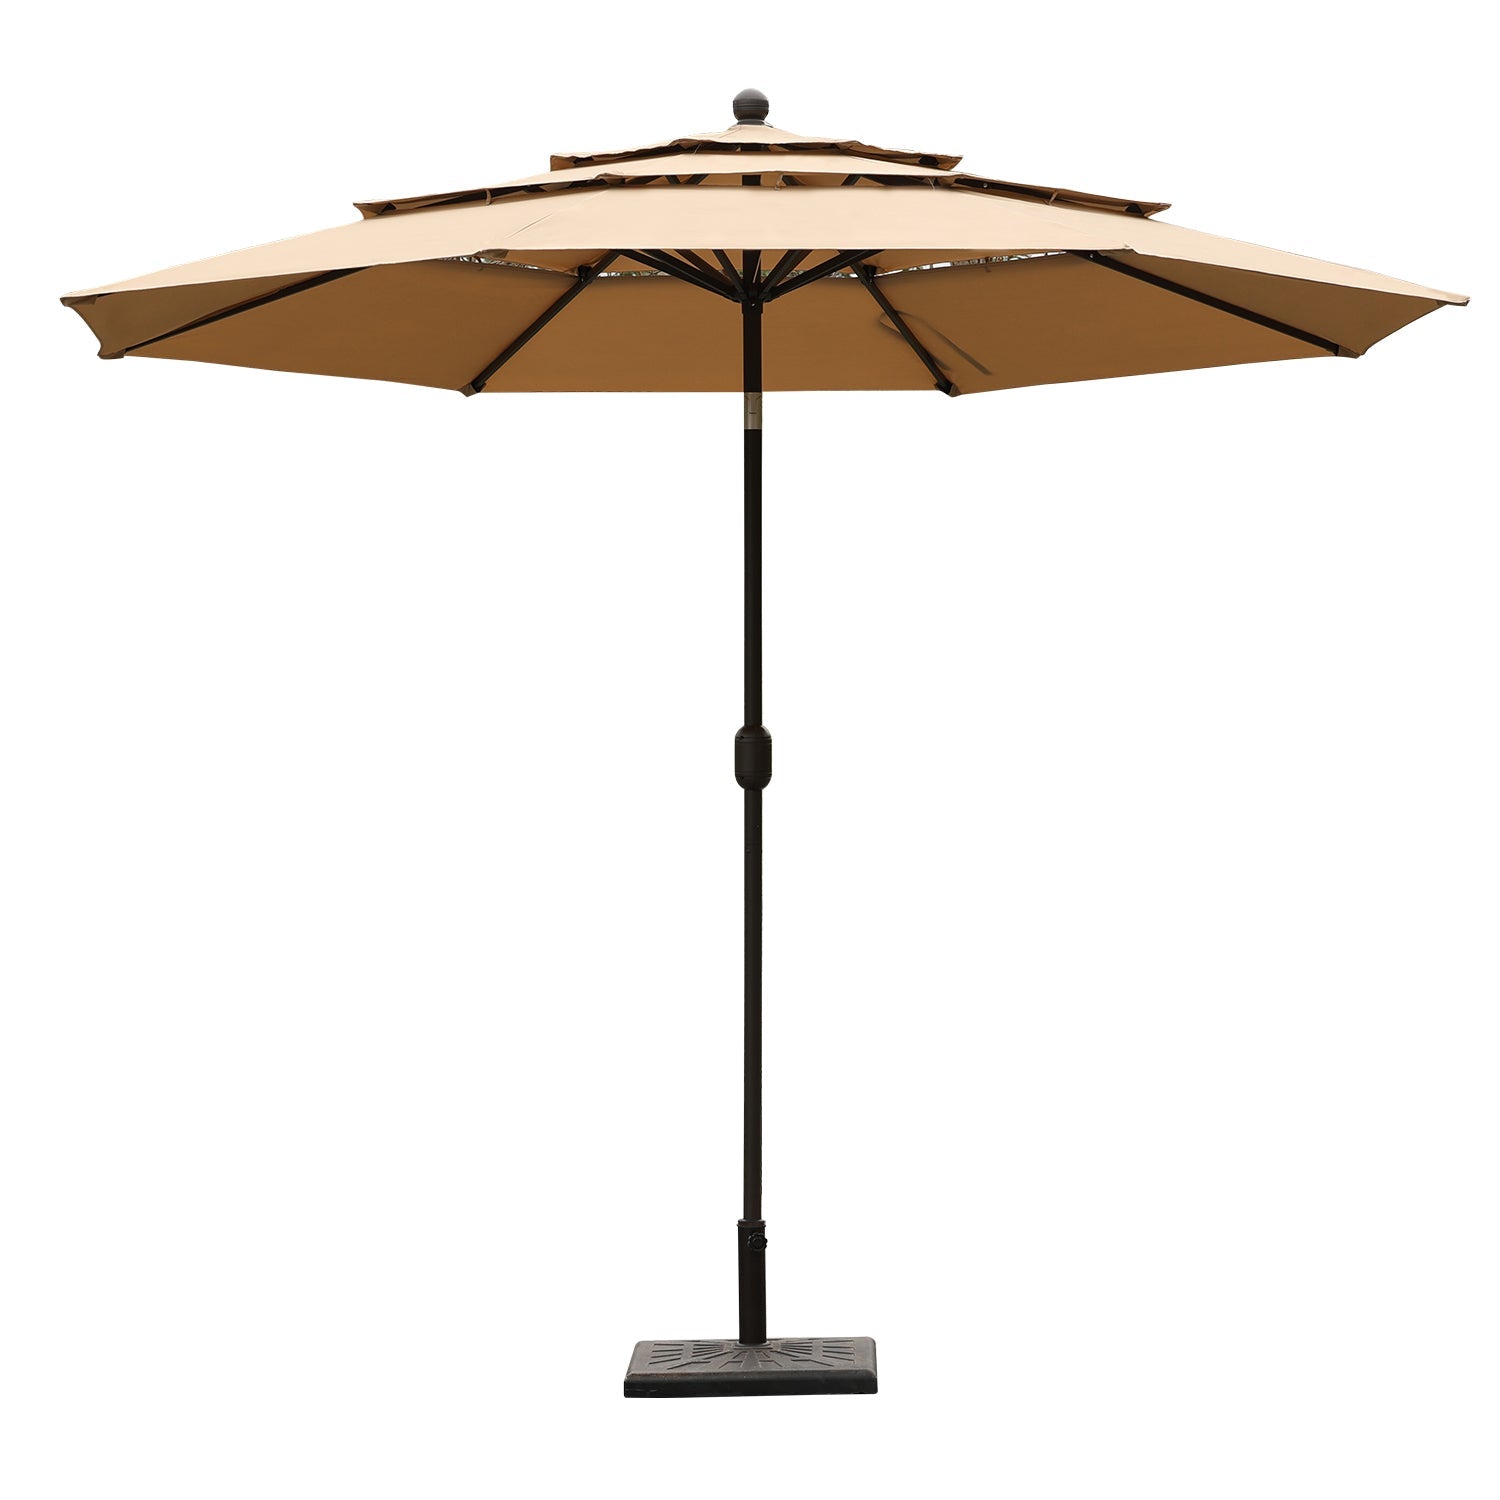 3 Tier 10ft. Patio Umbrella - Market Umbrella with Crank (No Base) Patio Umbrella Aoodor Brown  